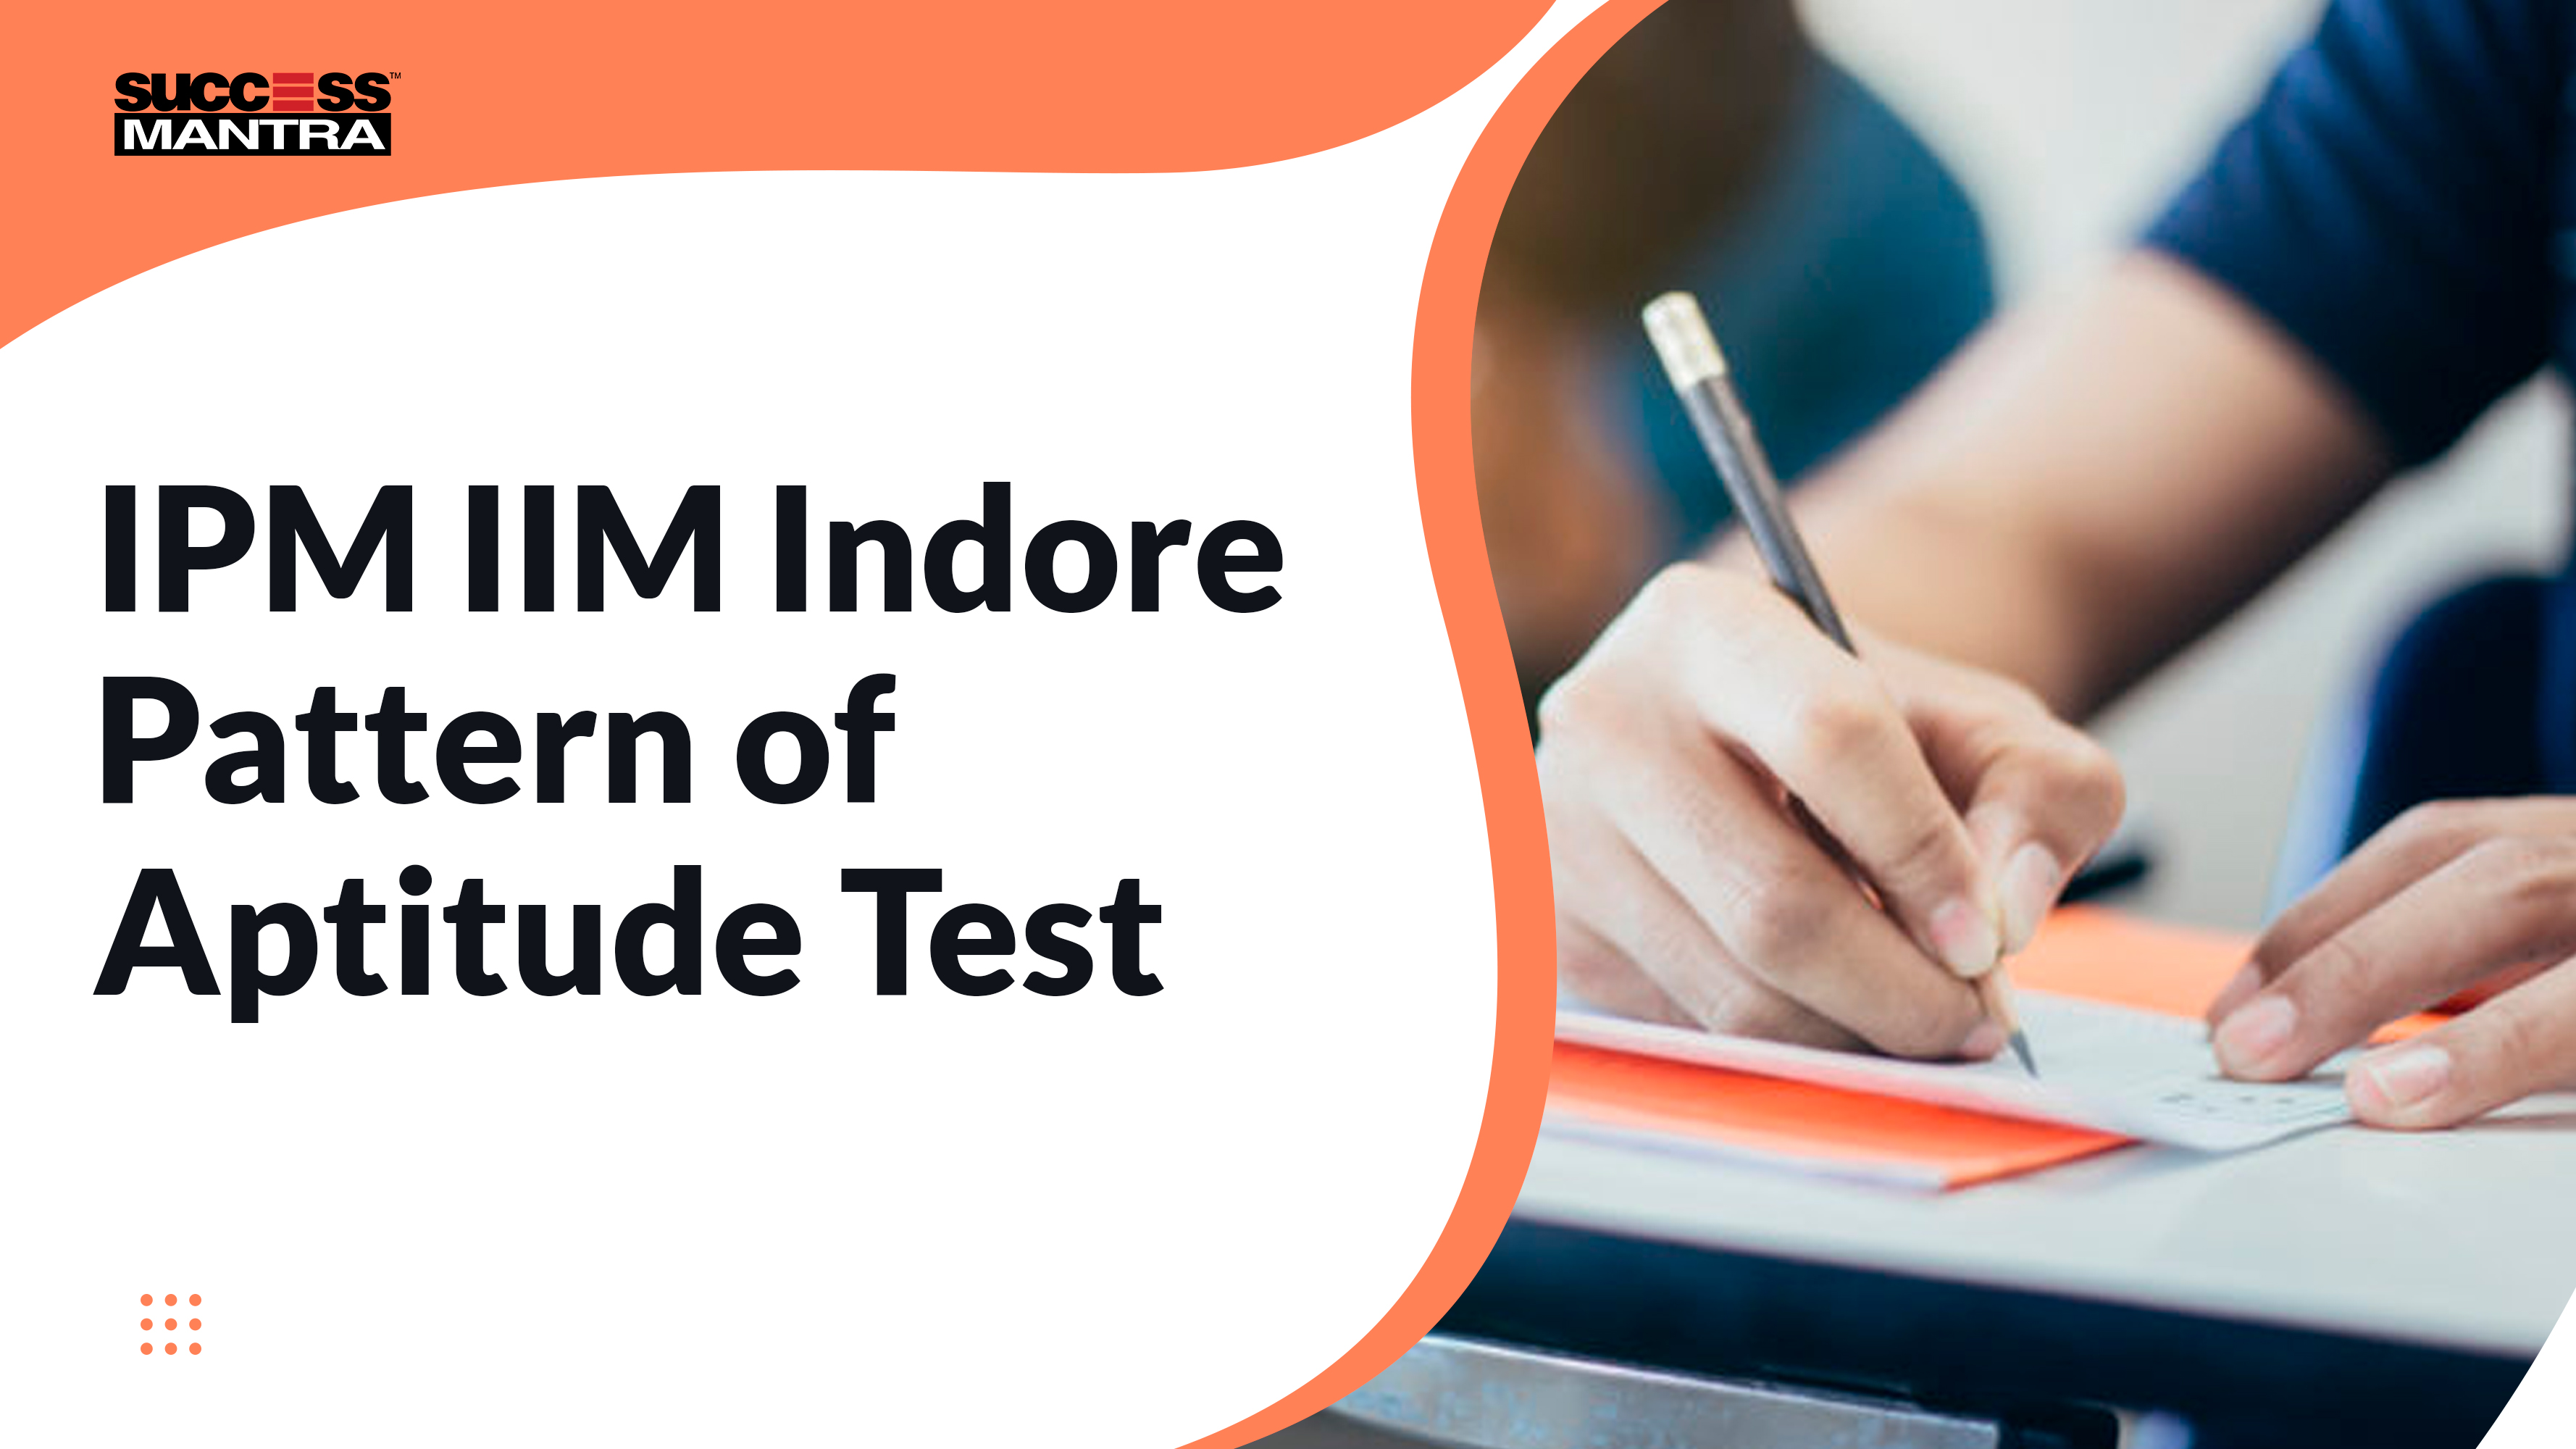 IPM IIM Indore Pattern of Aptitude Test